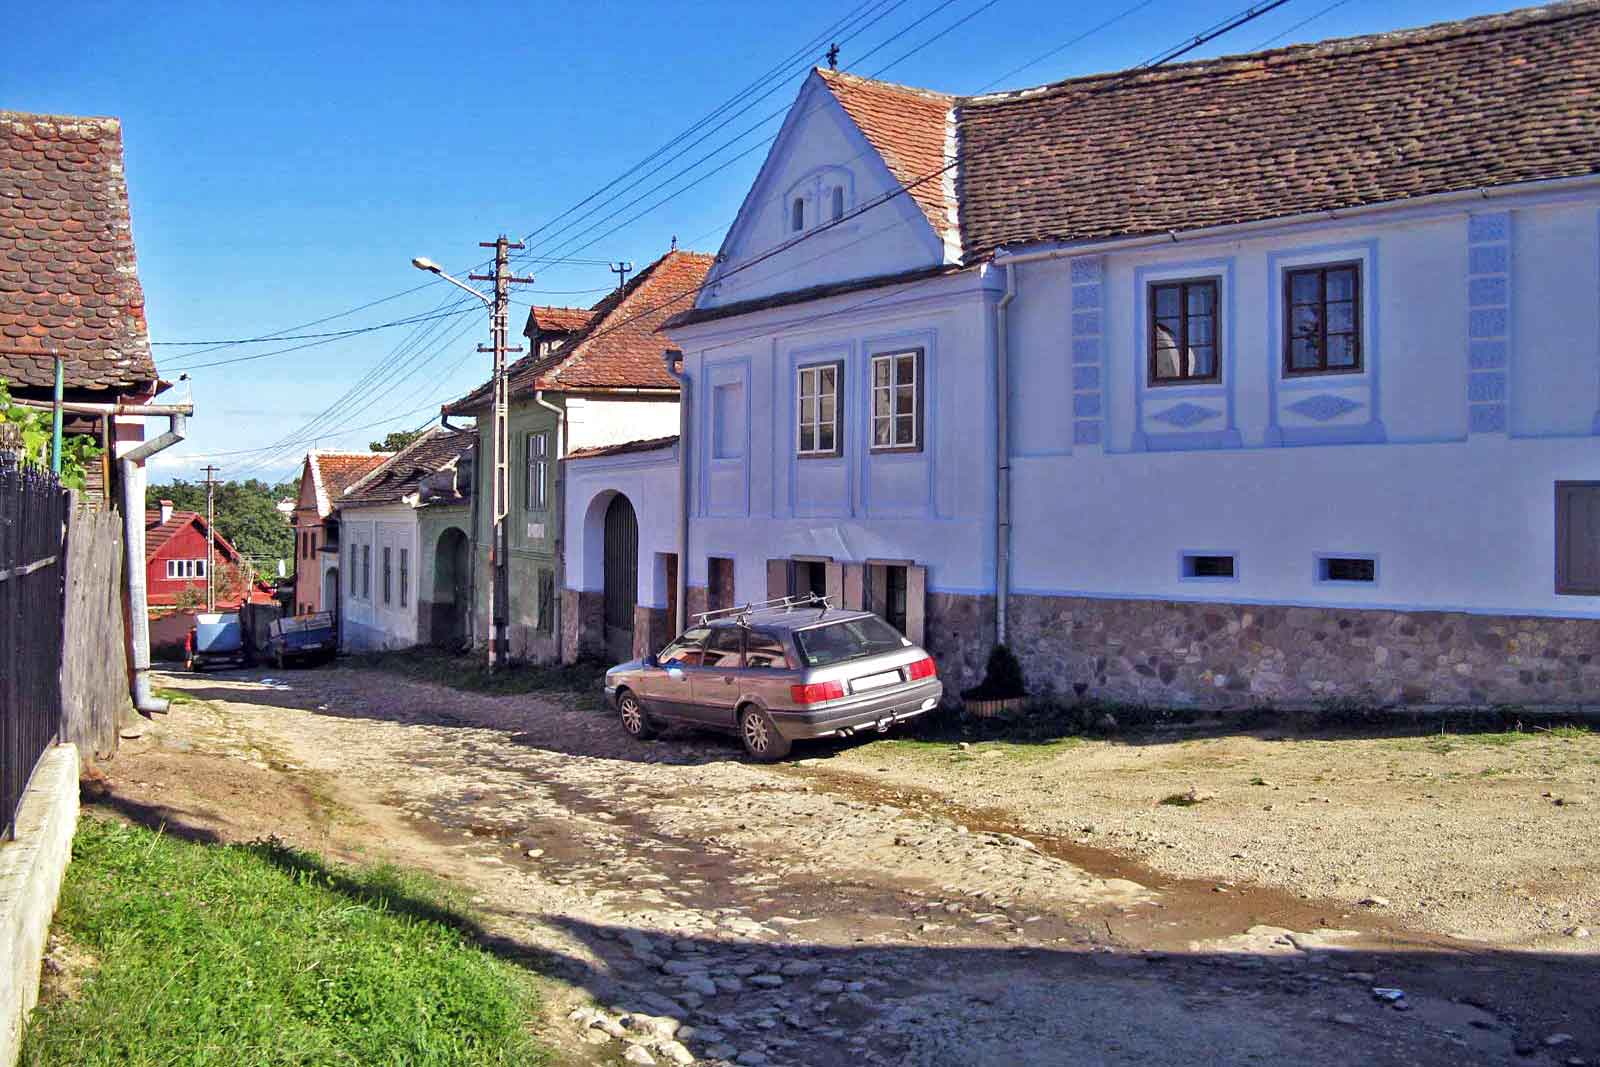 romania farmhouse cottage rental | couples & singles holidays to transylvania